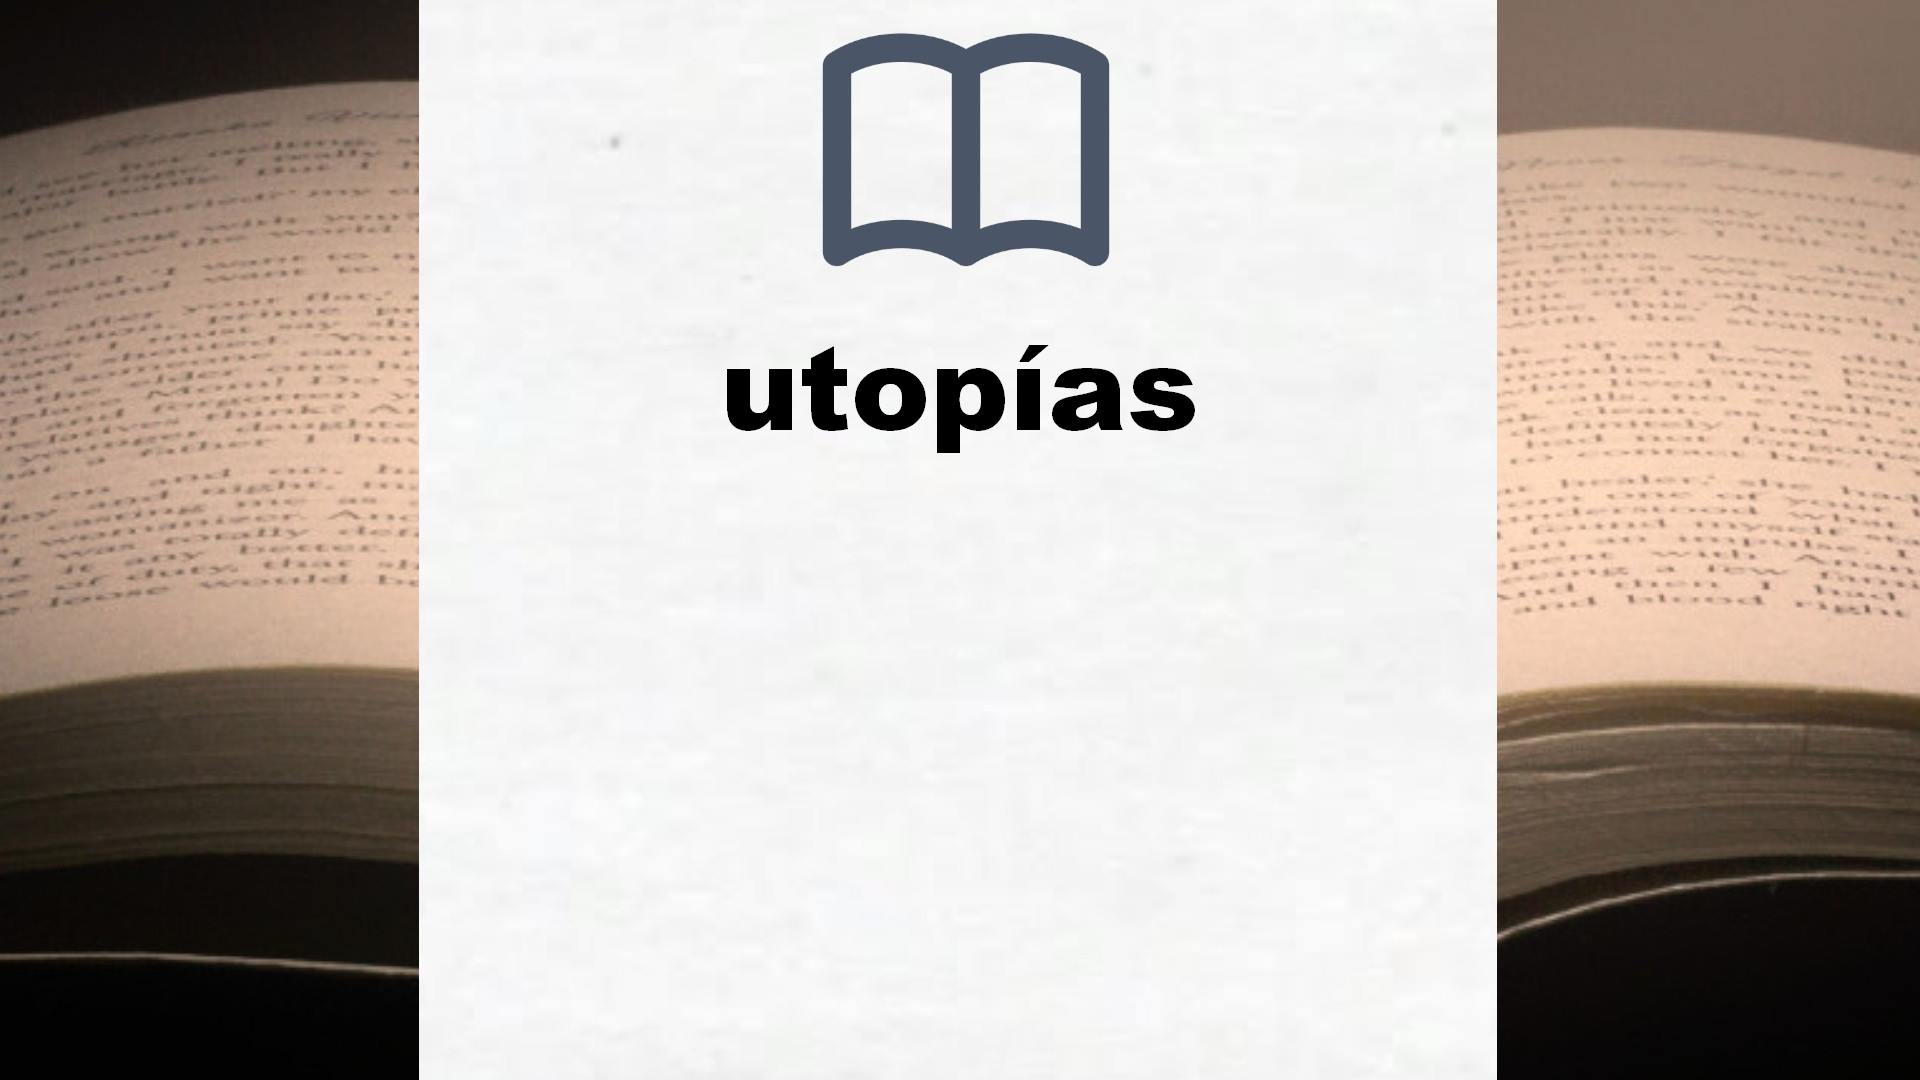 Libros sobre utopías